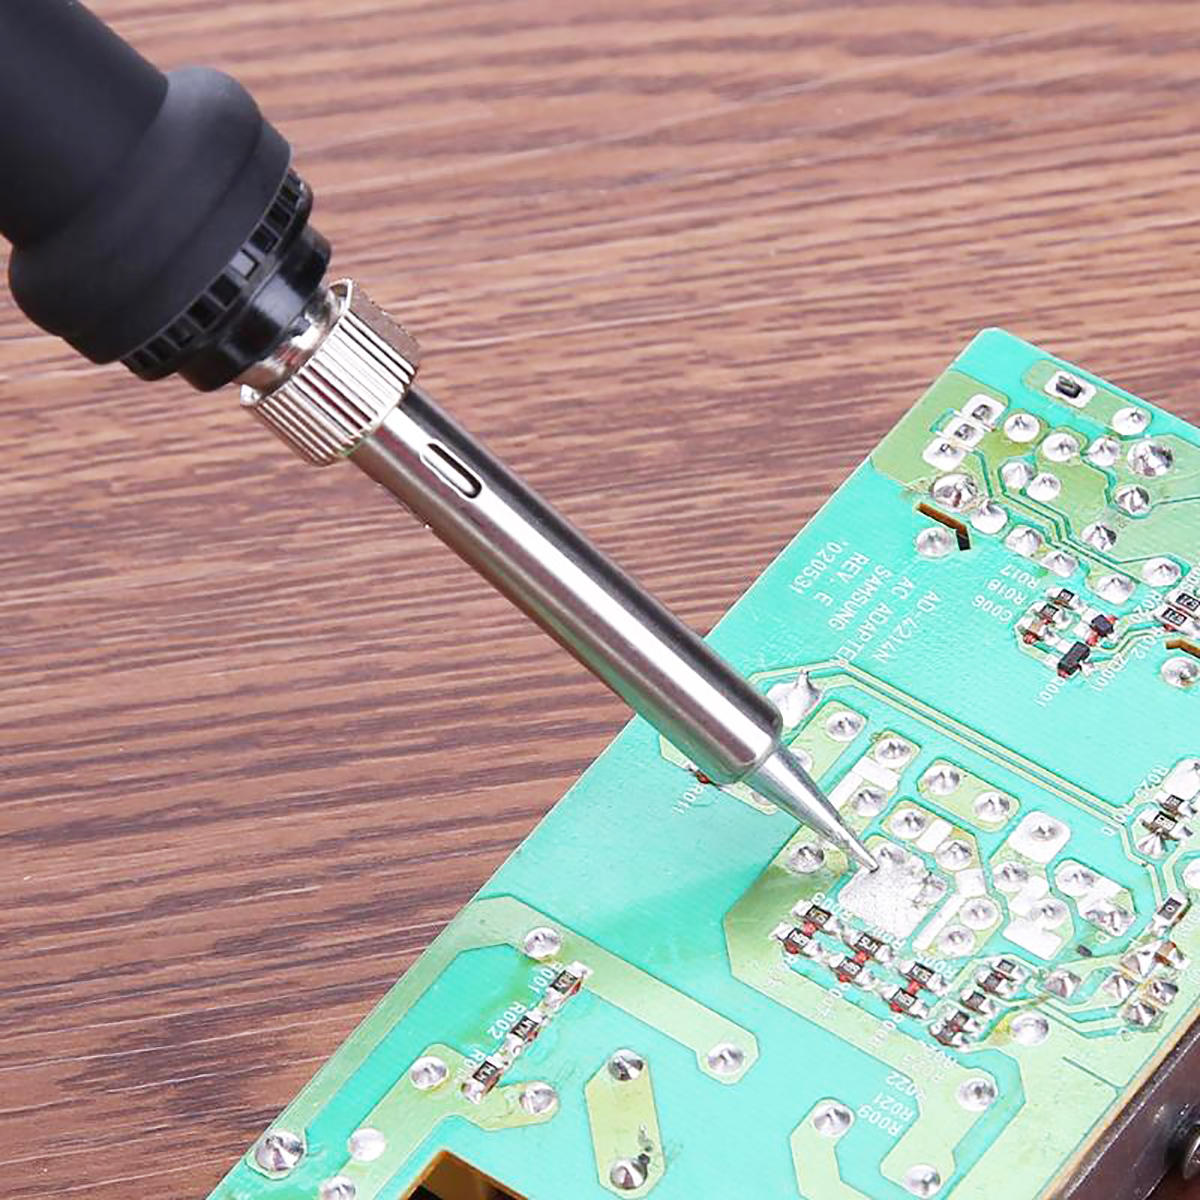 42 stuks 110 v/220 v elektrische soldeerbout lassen pen carving craft kit soldeer pincet